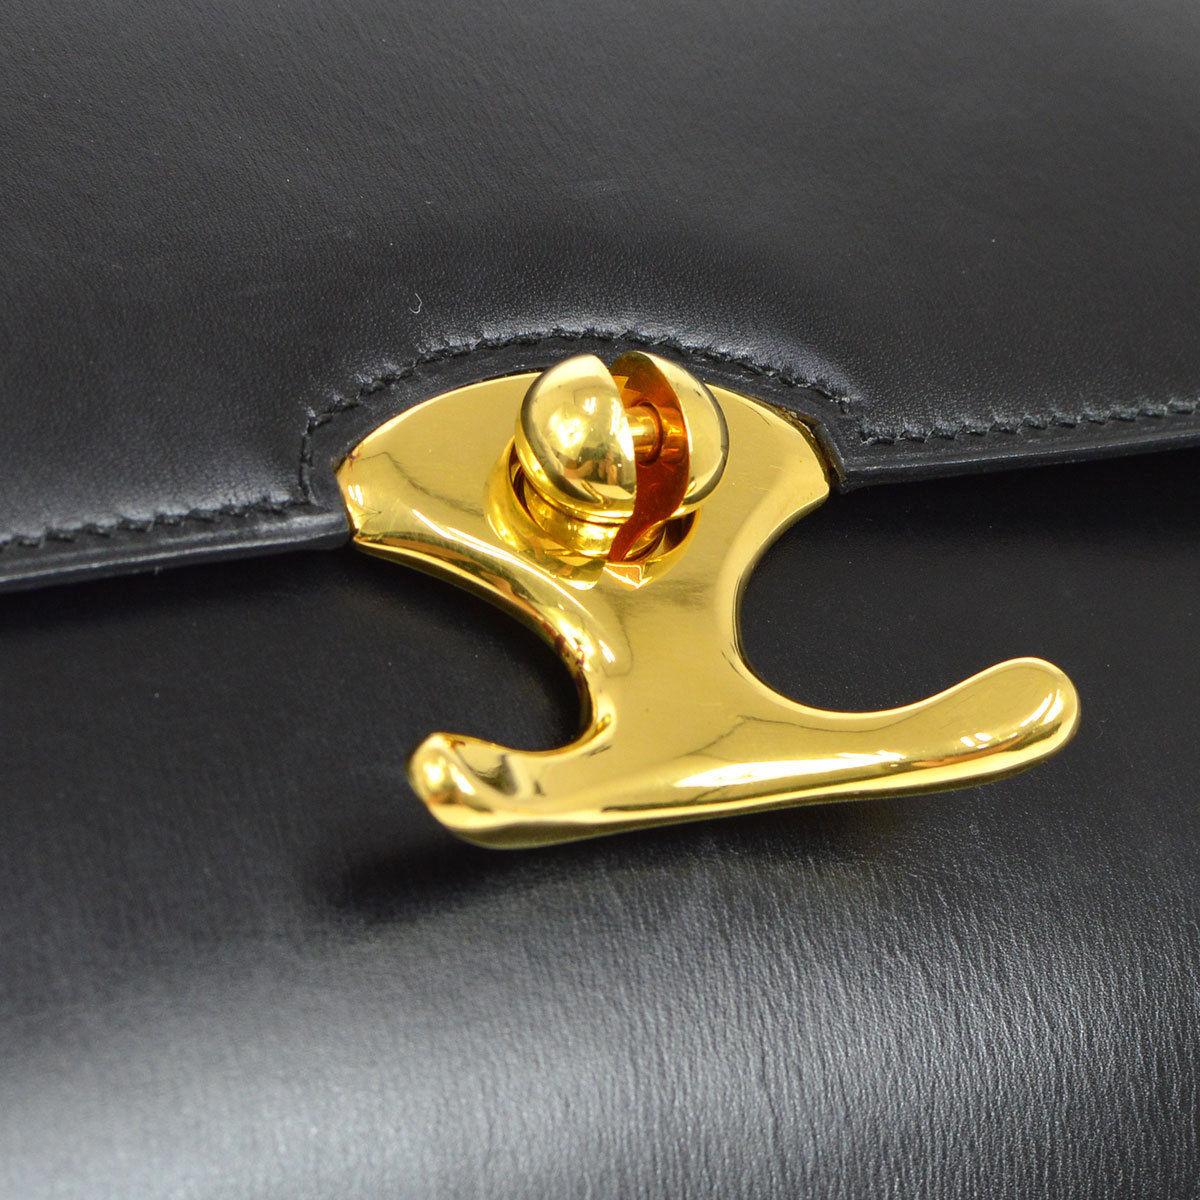 Hermes Black Leather Gold Emblem Evening Top Handle Satchel Kelly Style Bag

Leather
Gold tone hardware
Leather lining
Date code present
Made in France
Adjustable shoulder strap 8-17